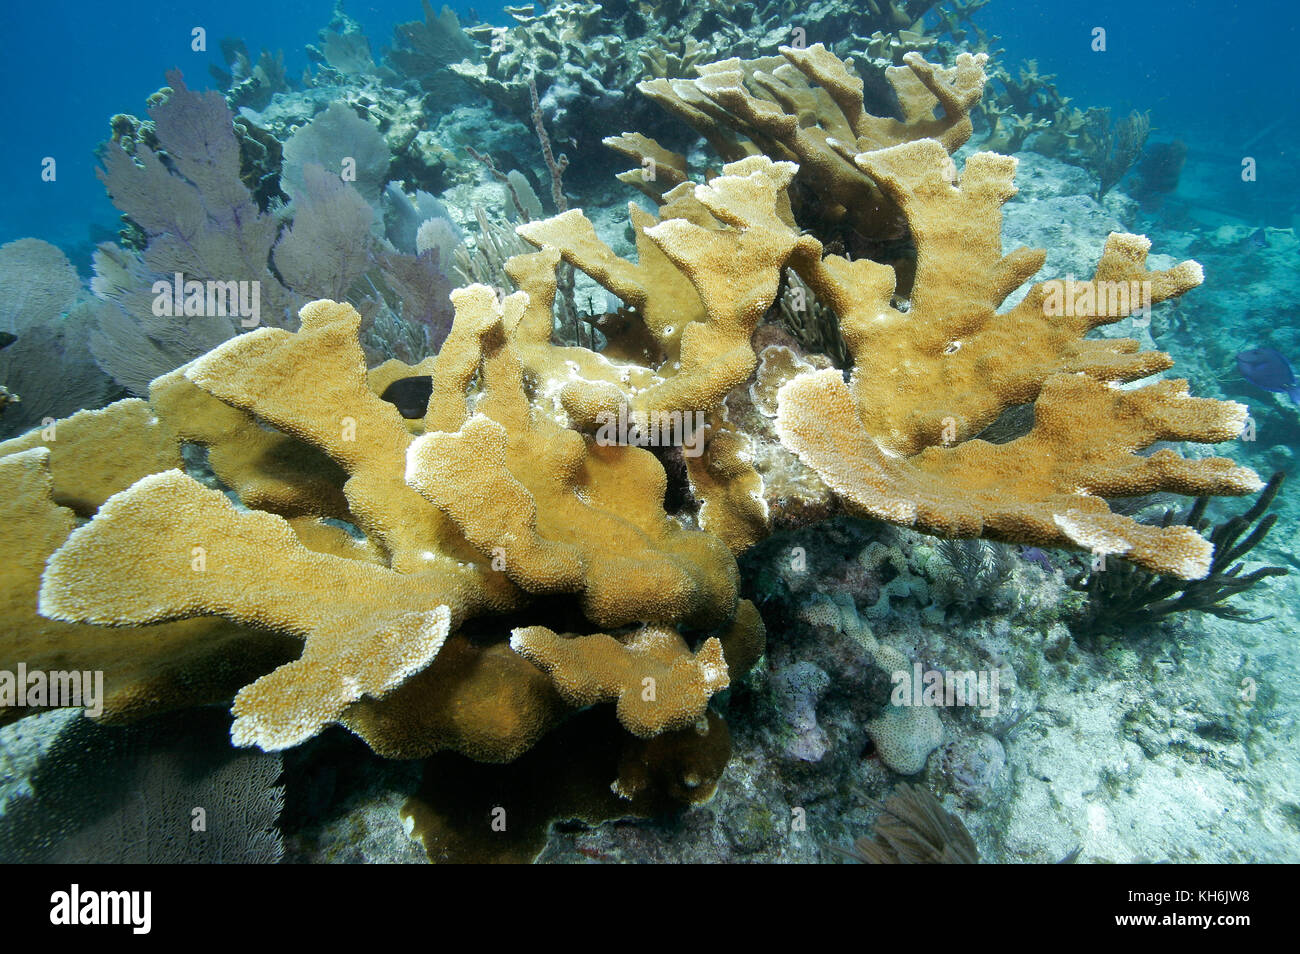 Elkhorn coral, Acropora palmata, a Critically Endangered species, Stock Photo